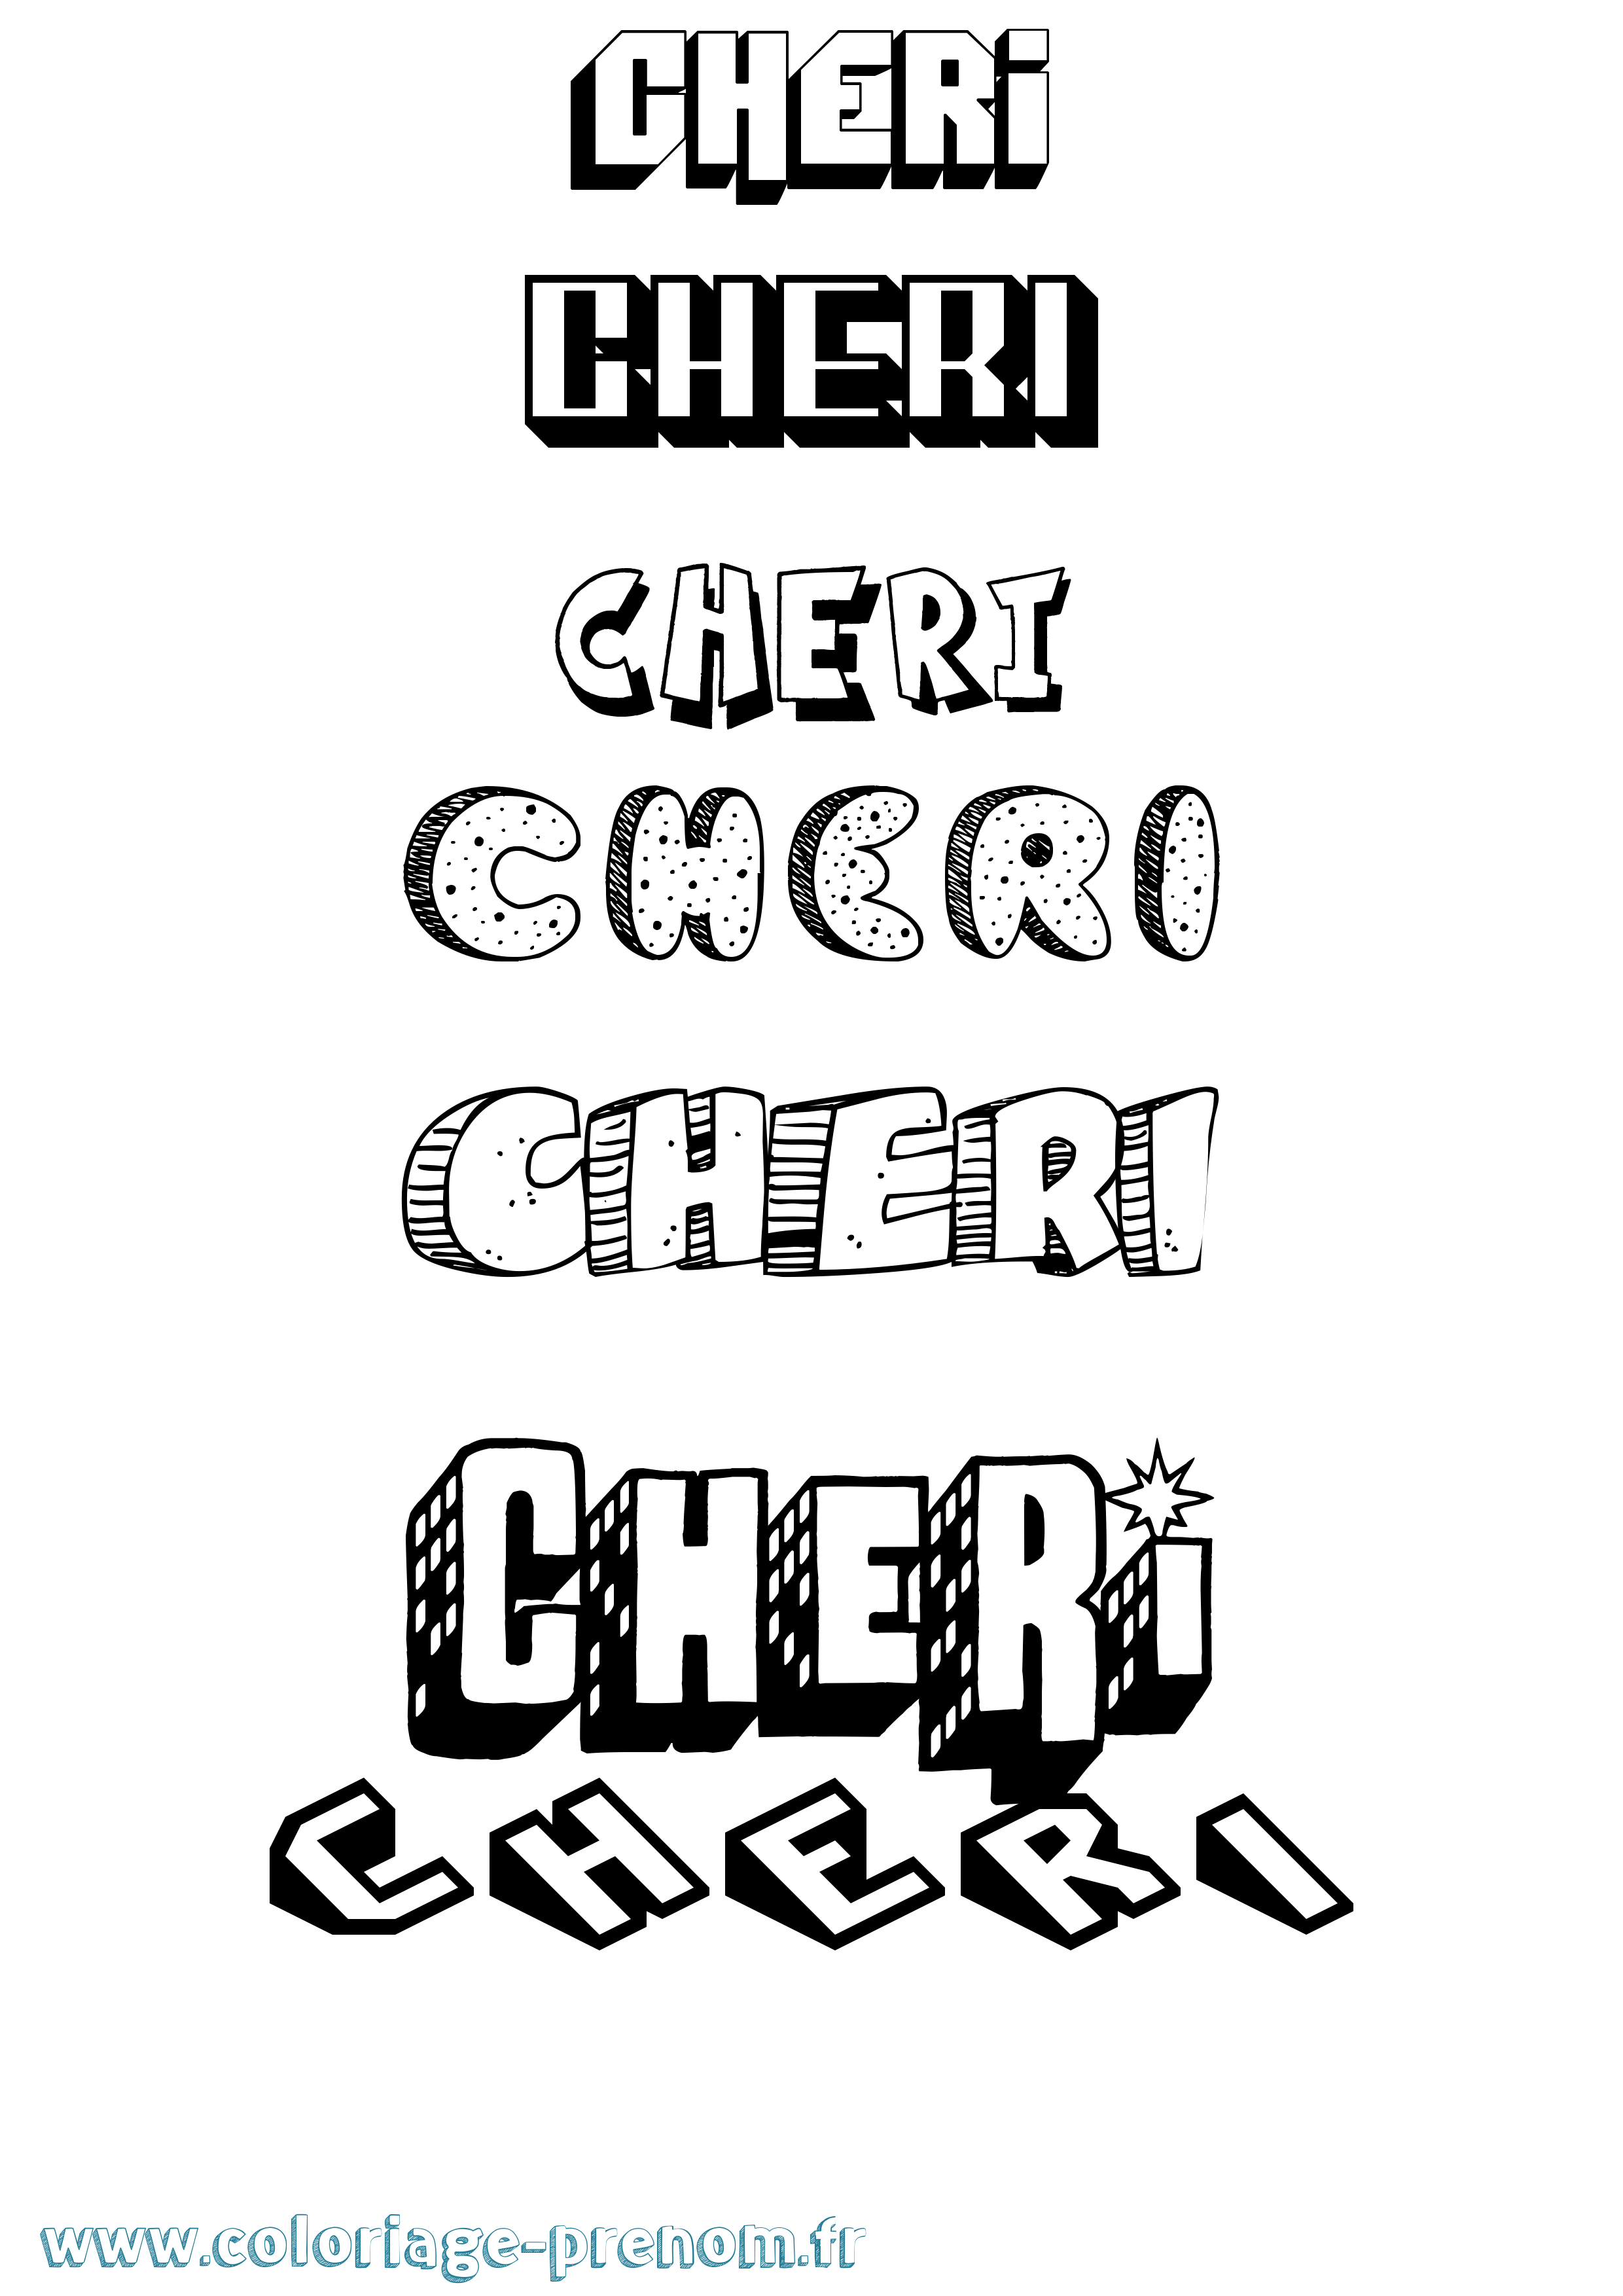 Coloriage prénom Cheri Effet 3D